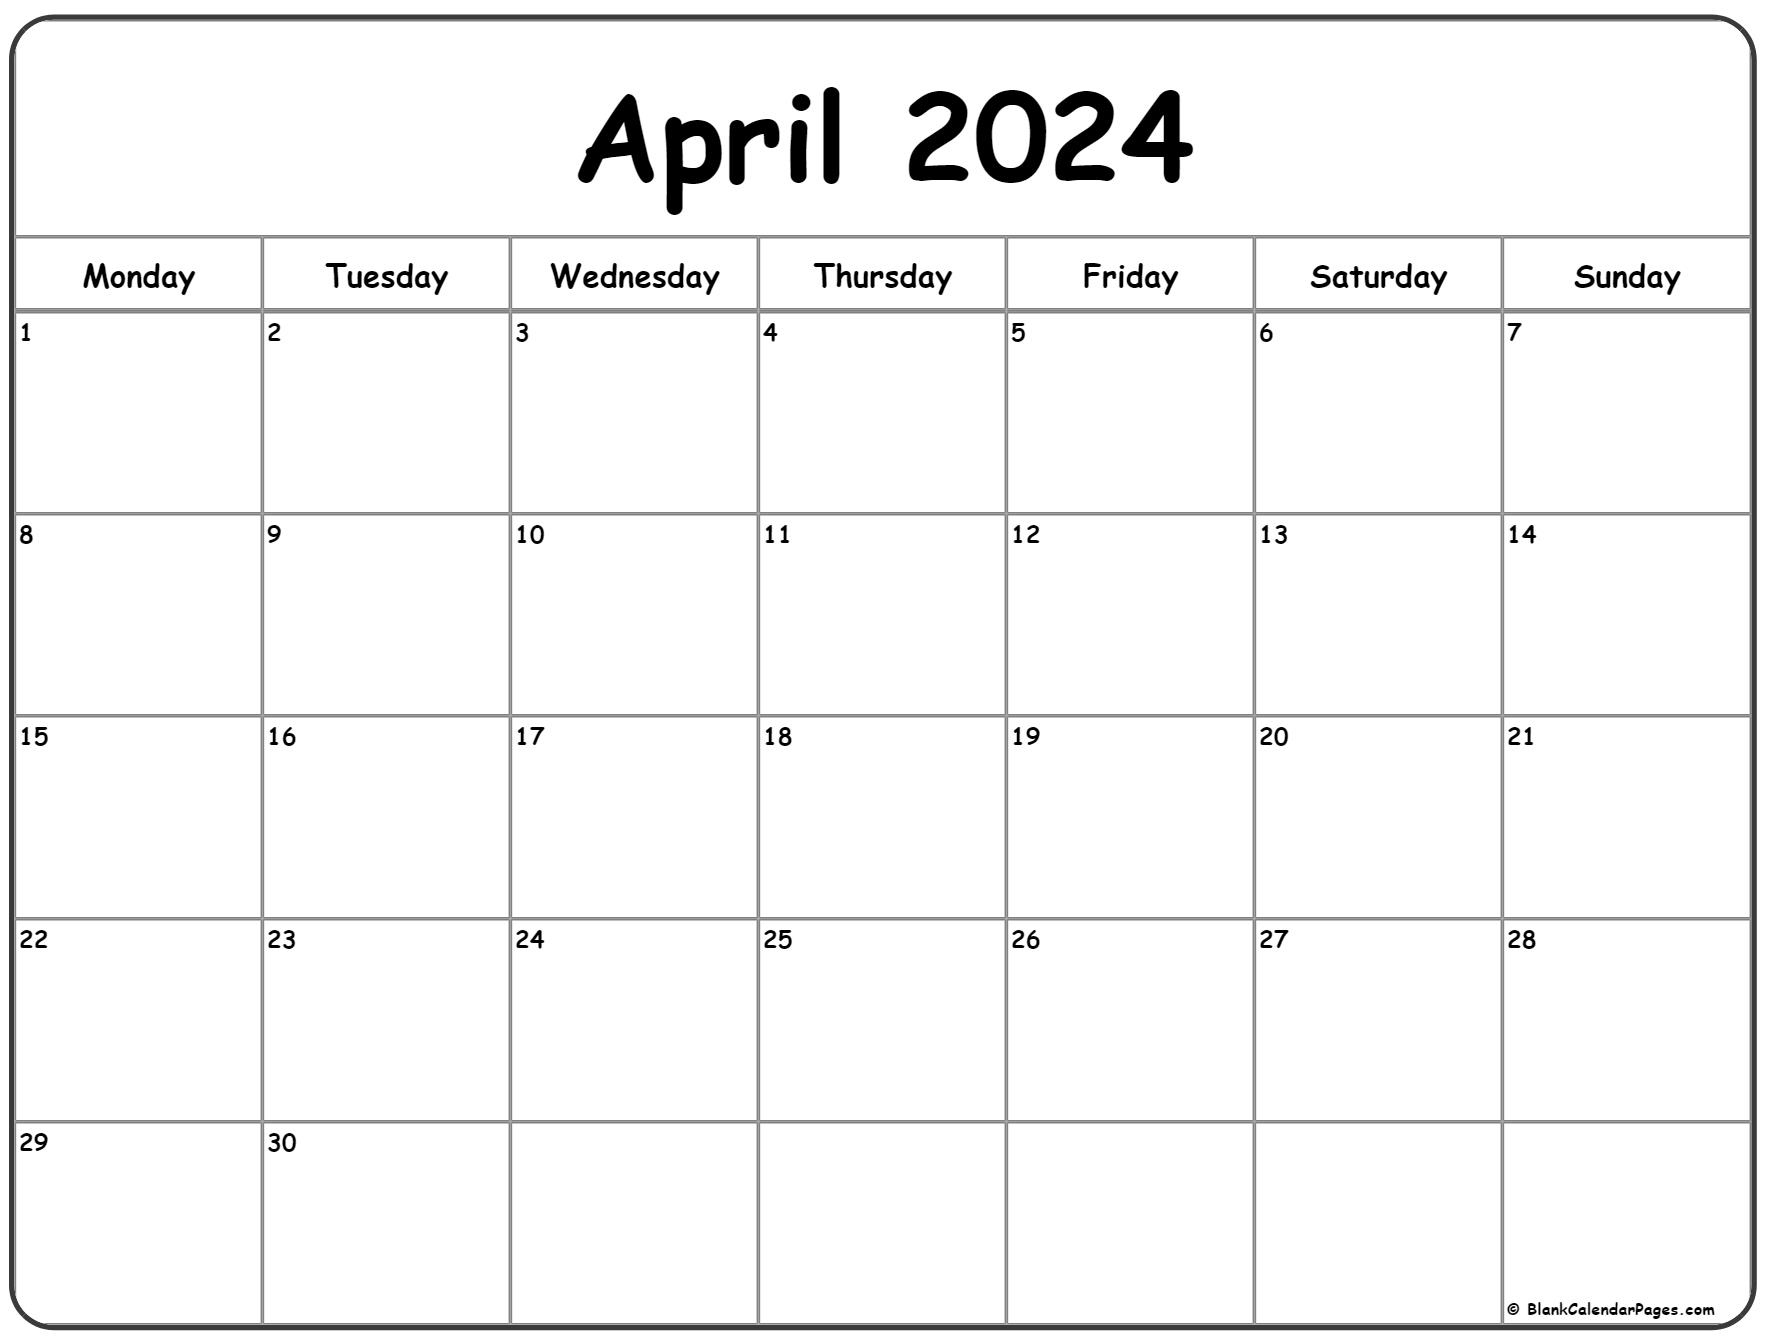 April 2024 Monday Calendar | Monday To Sunday | Printable Calendar April 2024 Monthly